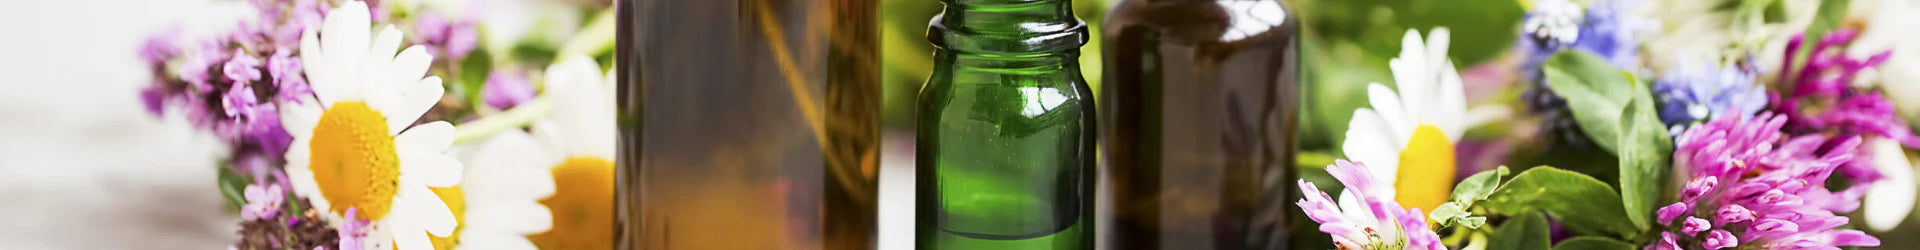 GL18 Glass Bottles